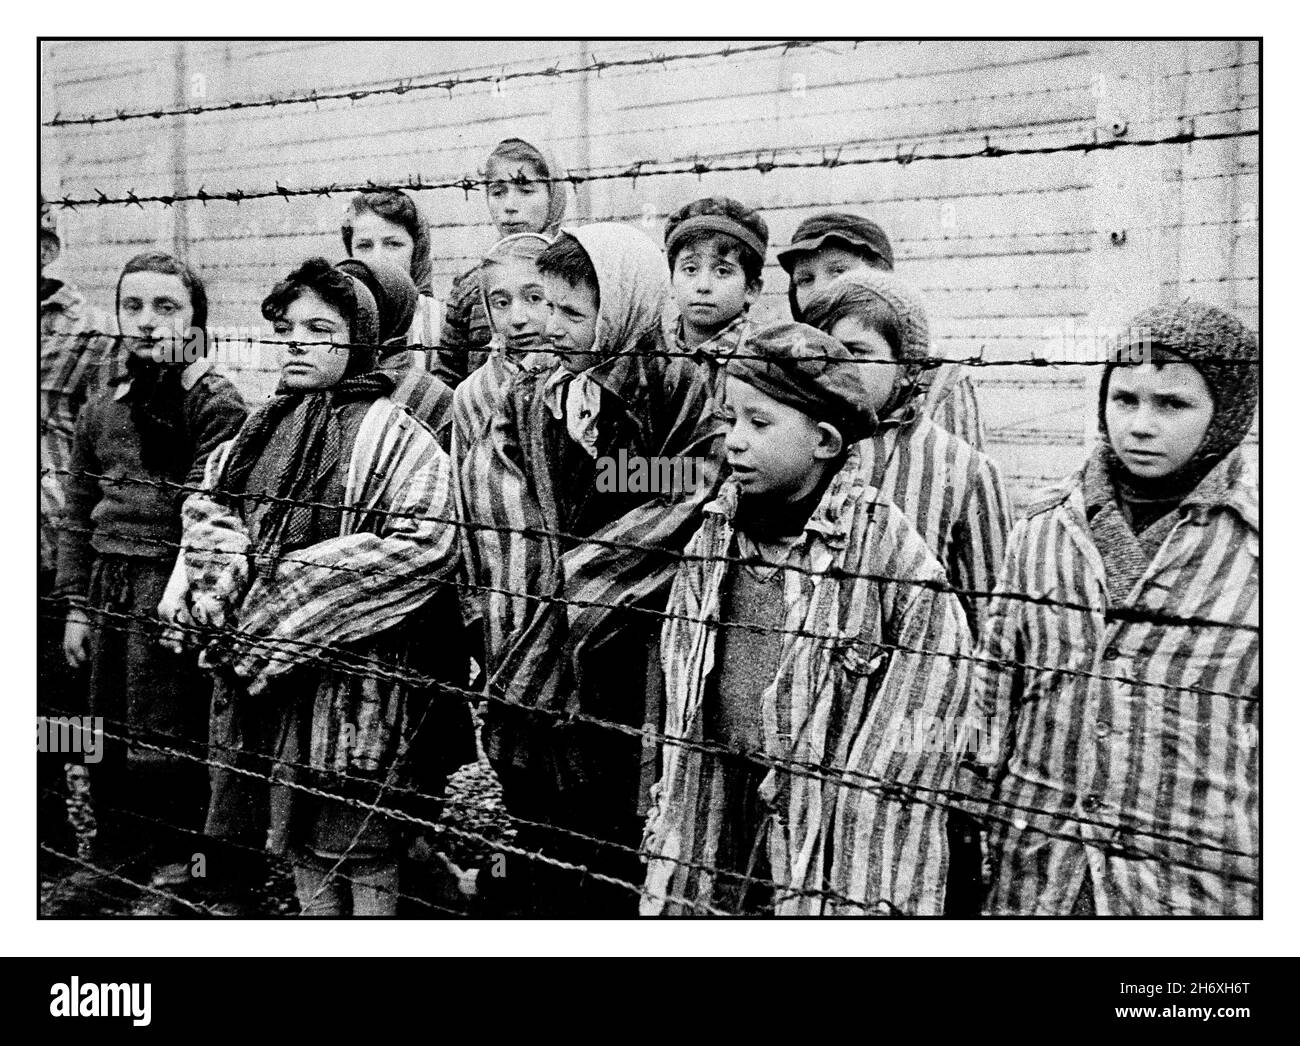 AUSCHWITZ 1945 ENFANTS PRISONNIERS LIBÉRATION les enfants prisonniers portant des uniformes rayés se trouvent derrière une clôture barbelée dans le célèbre camp de la mort nazi de la Seconde Guerre mondiale Auschwitz, dans le sud de la Pologne.Deuxième Guerre mondiale des enfants prisonniers survivants du camp de concentration d'Auschwitz portant des vestes de prisonnier rayées de taille adulte, se tiennent derrière une clôture barbelée. Banque D'Images